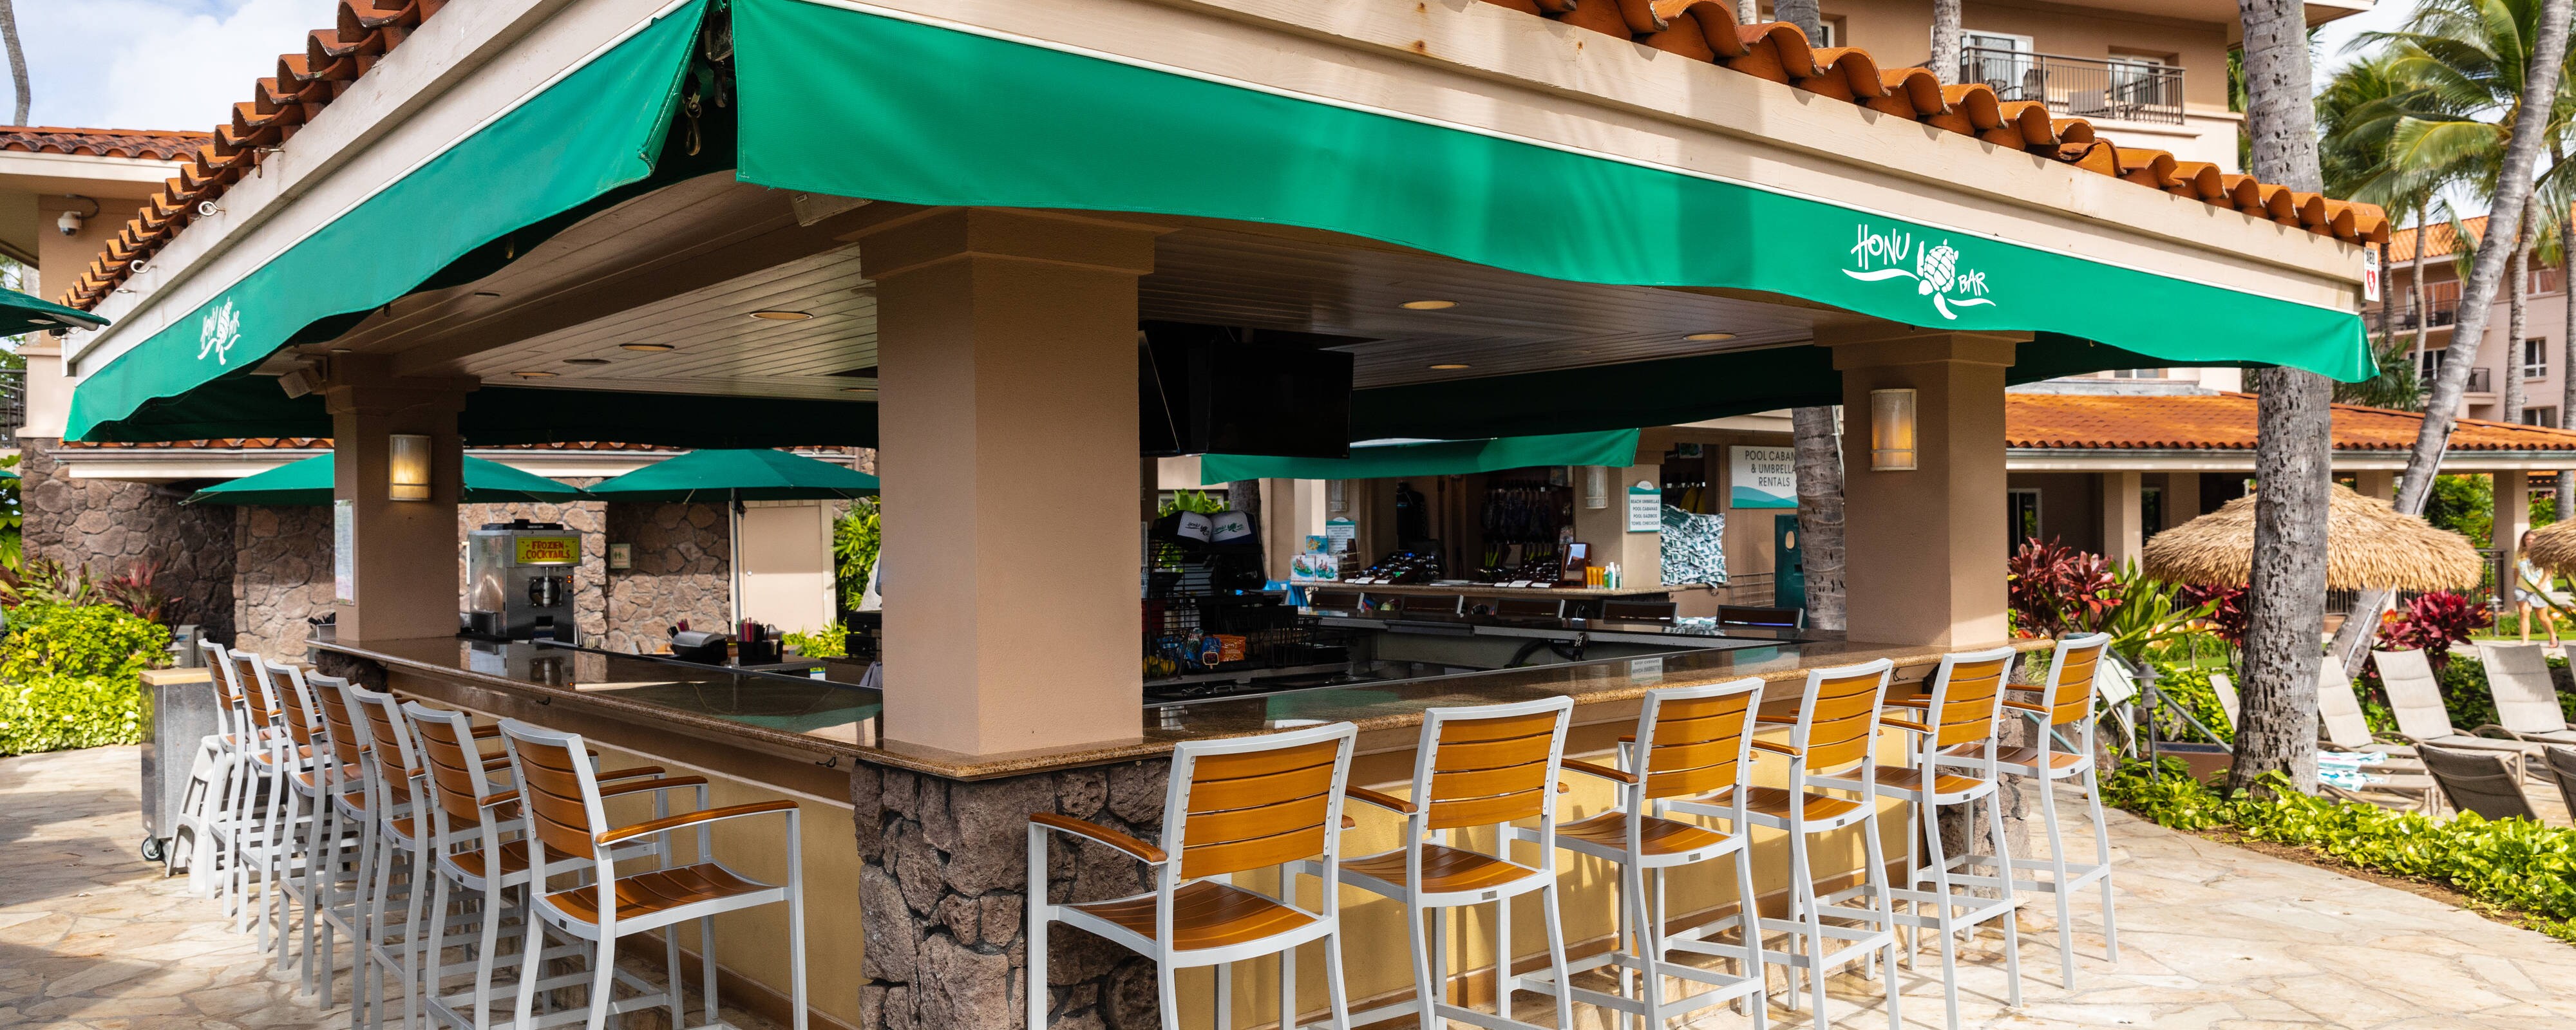 Restaurants in Kauai South Shore | Marriott's Waiohai Beach Club